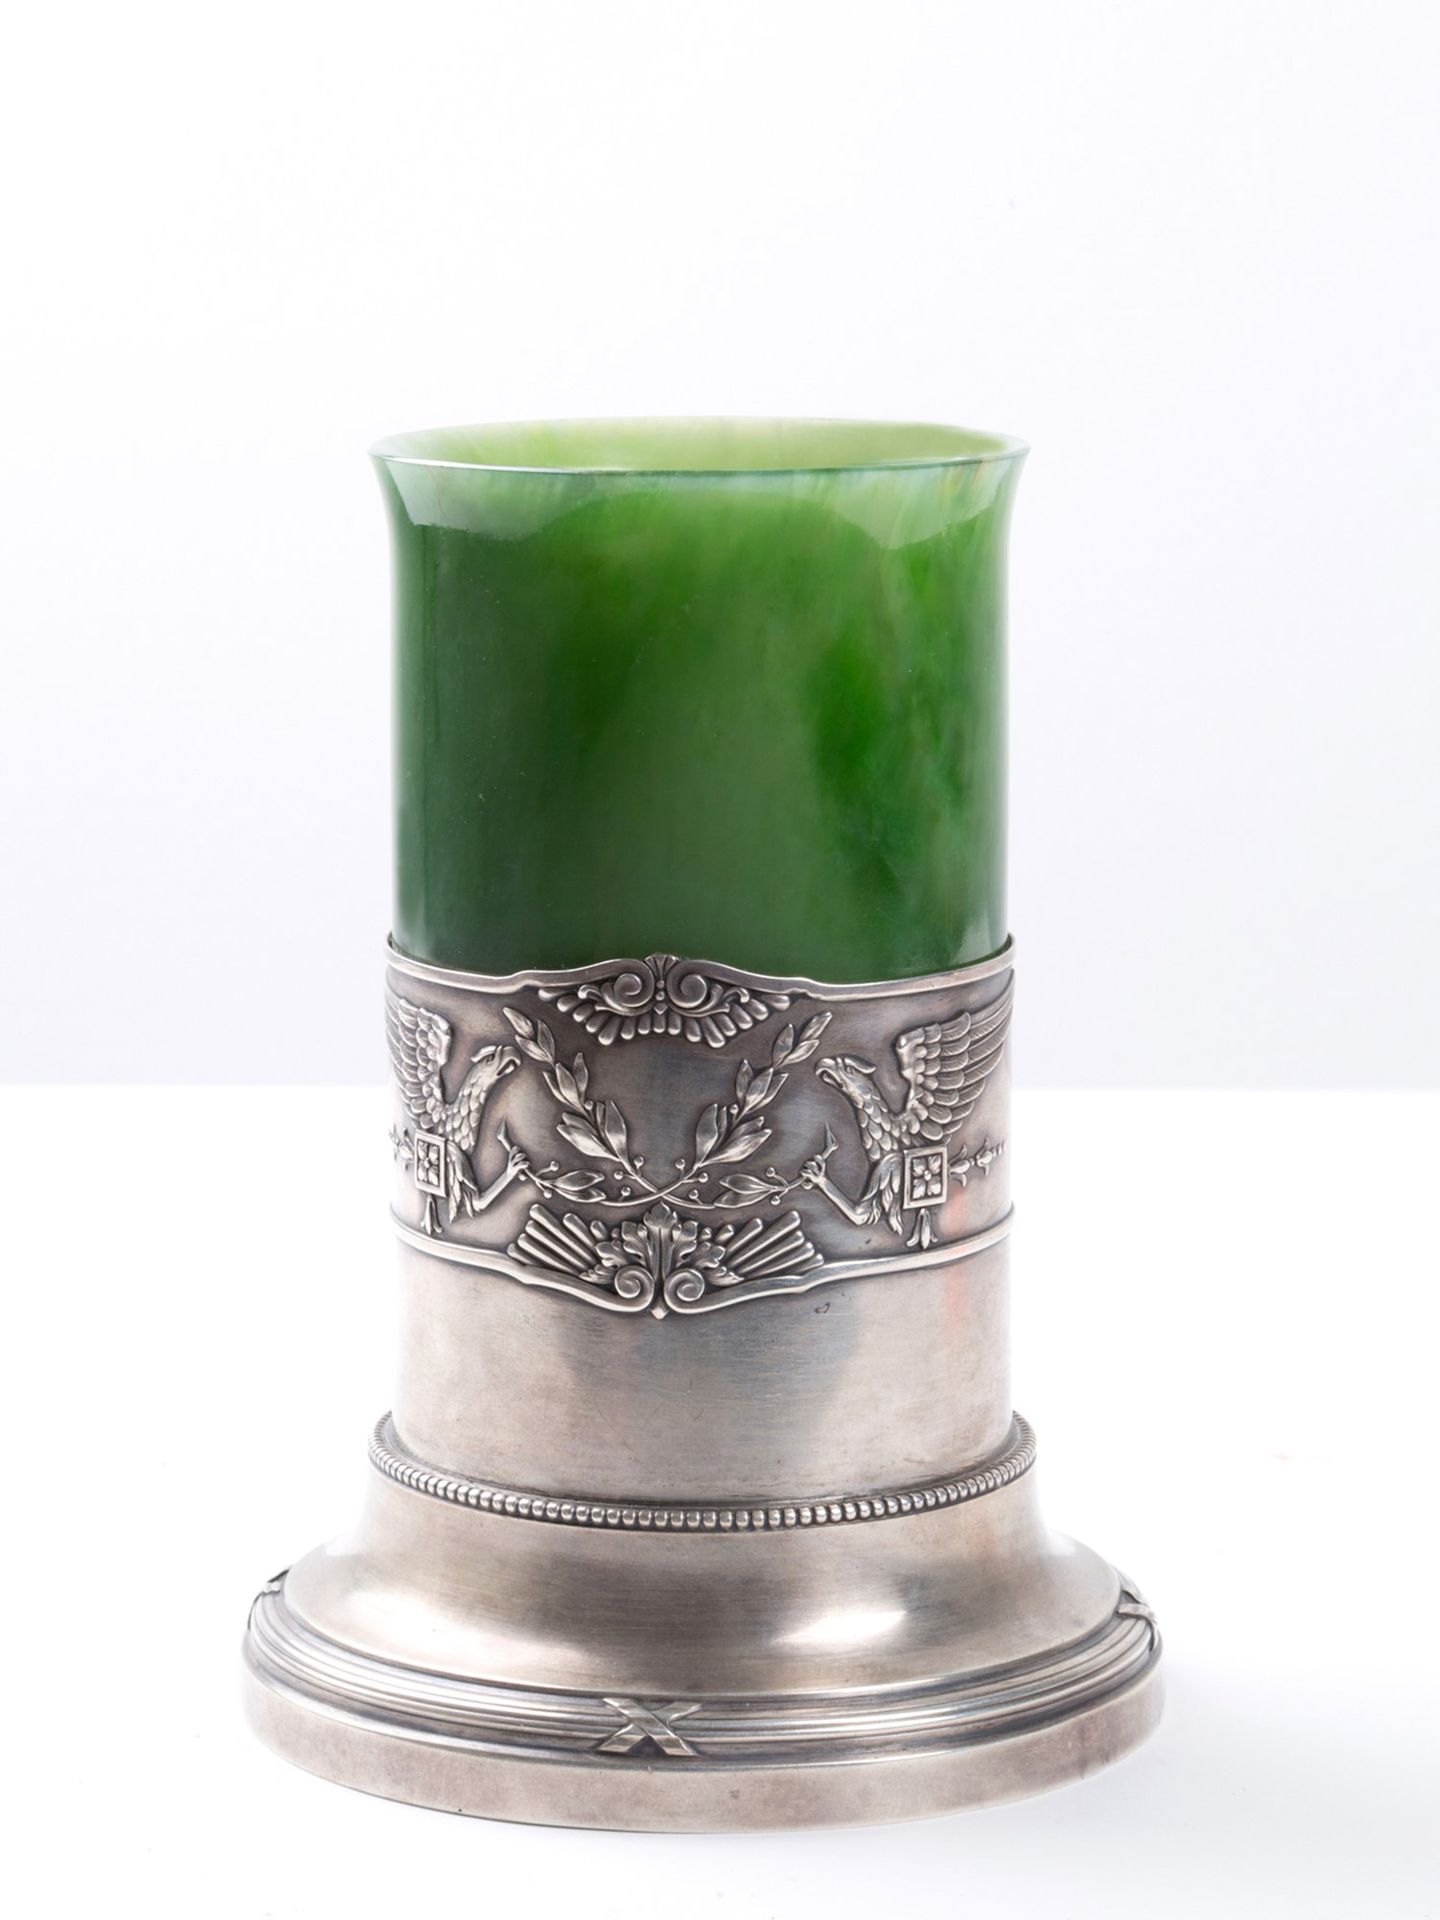 绿玉雕刻花瓶，镶嵌在精美的压花银底座中。FABERGE